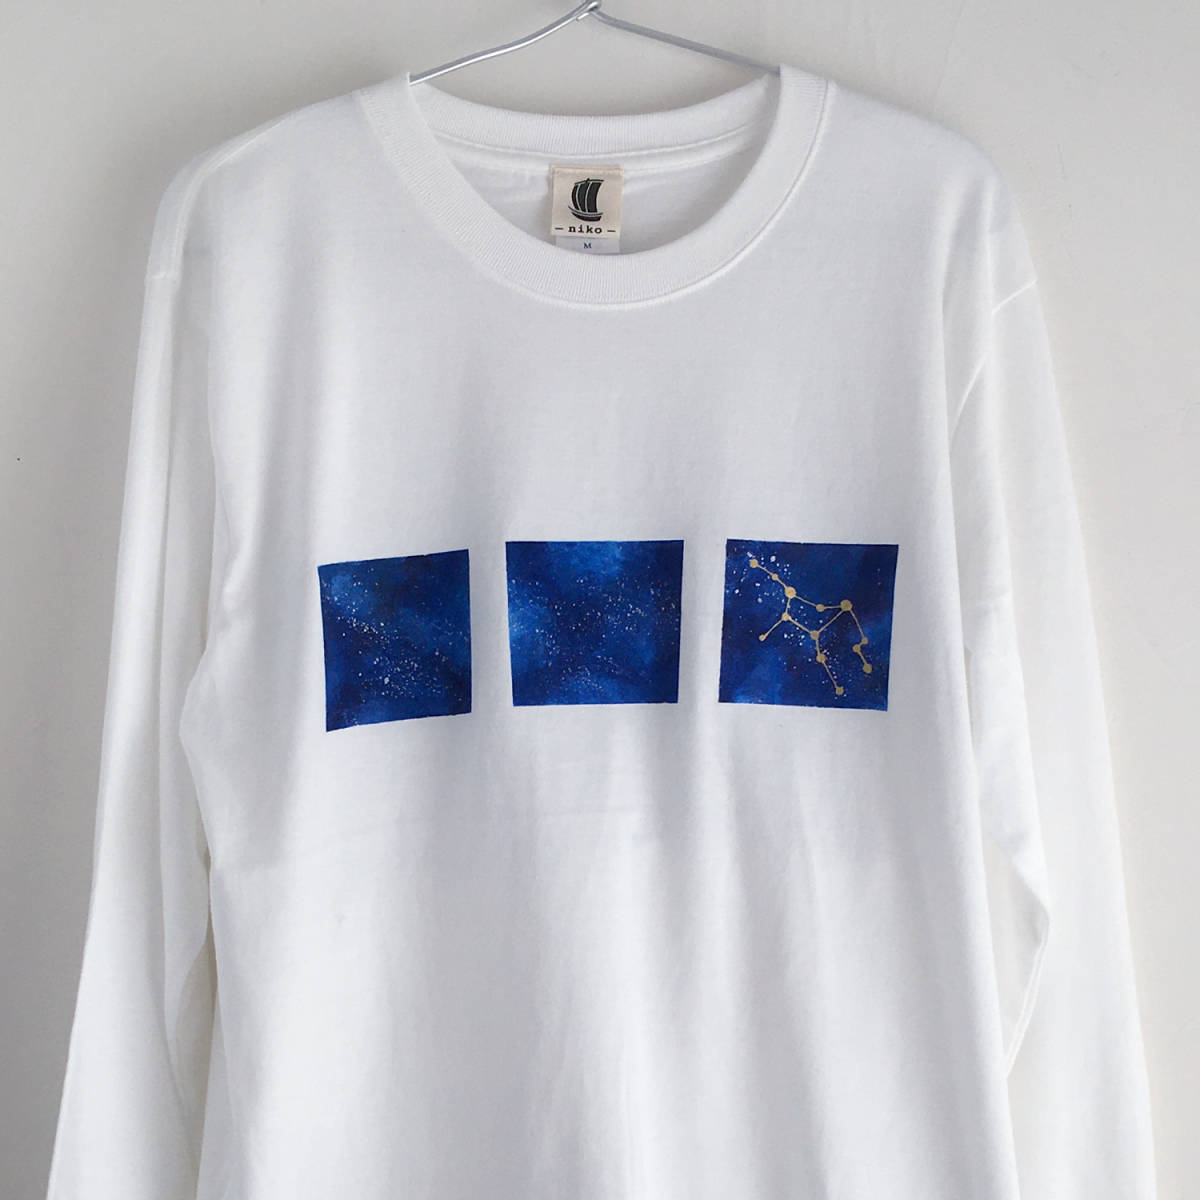 Camiseta de manga larga con estampado espacial dibujado a mano y 12 constelaciones para elegir, blanco, talla XL, Galaxia, mangas acanaladas, camiseta larga, Camiseta, manga larga, Talla XL y superior